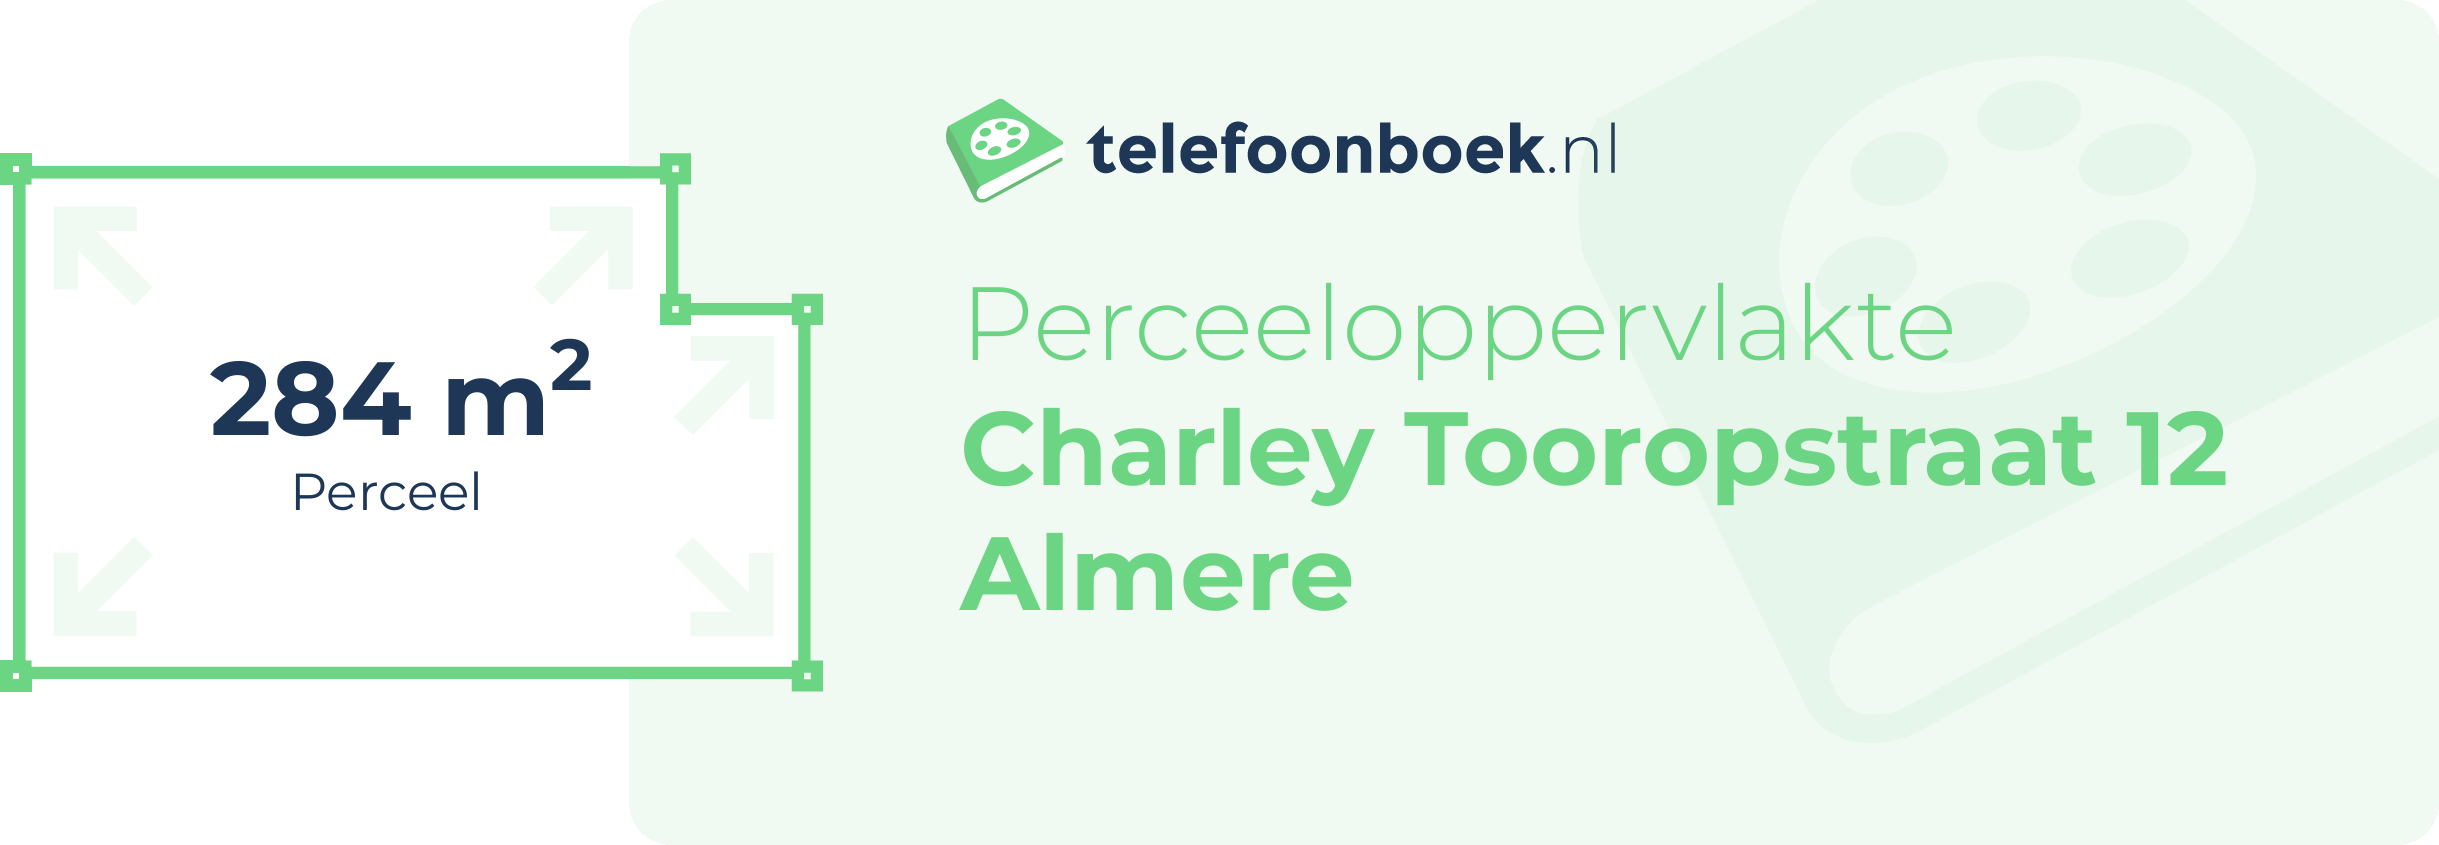 Perceeloppervlakte Charley Tooropstraat 12 Almere